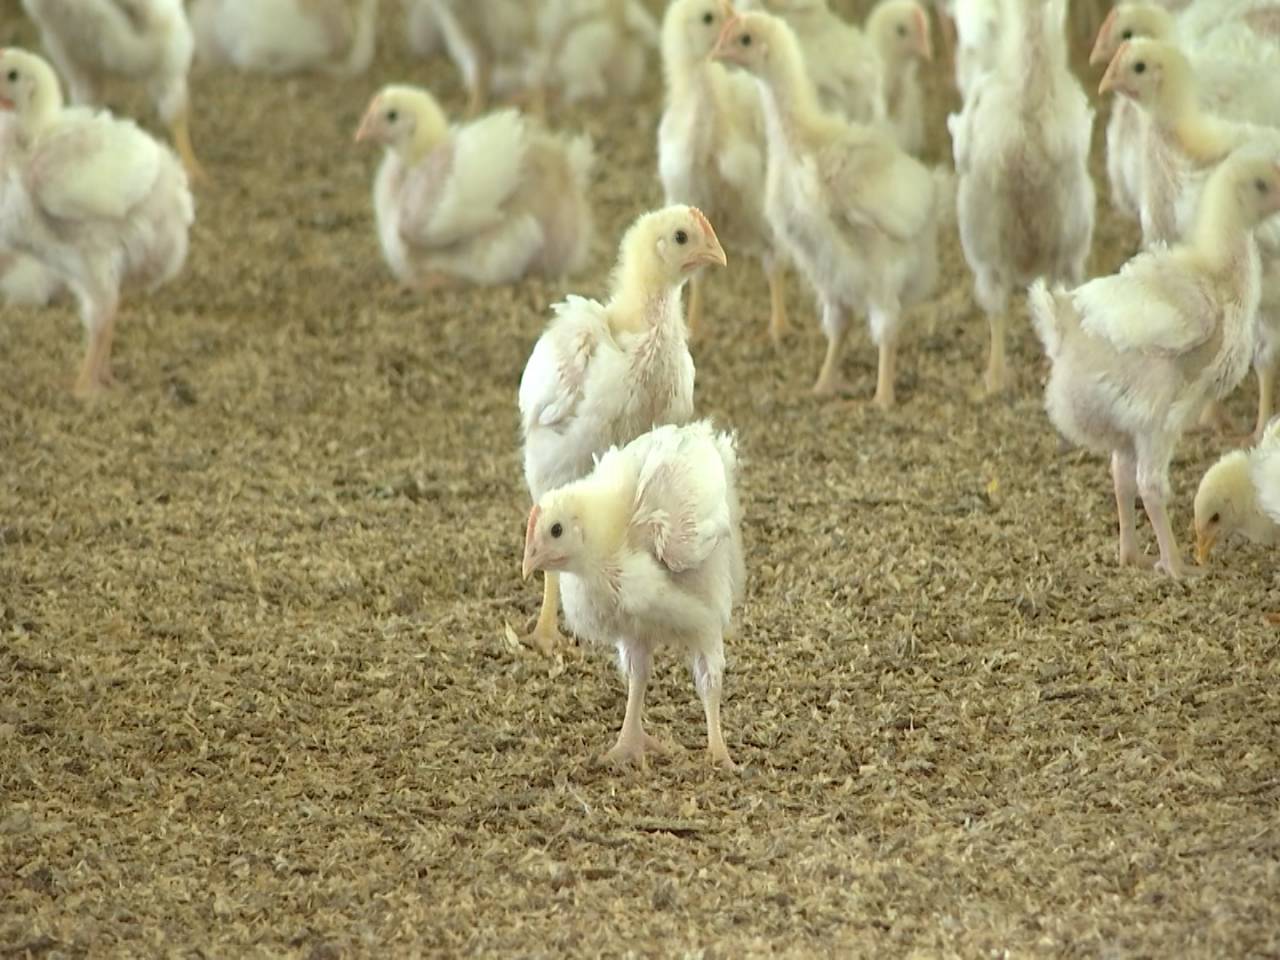 Plus 70% en deux ans, les coûts des aliments au soja pour les poulets explosent.